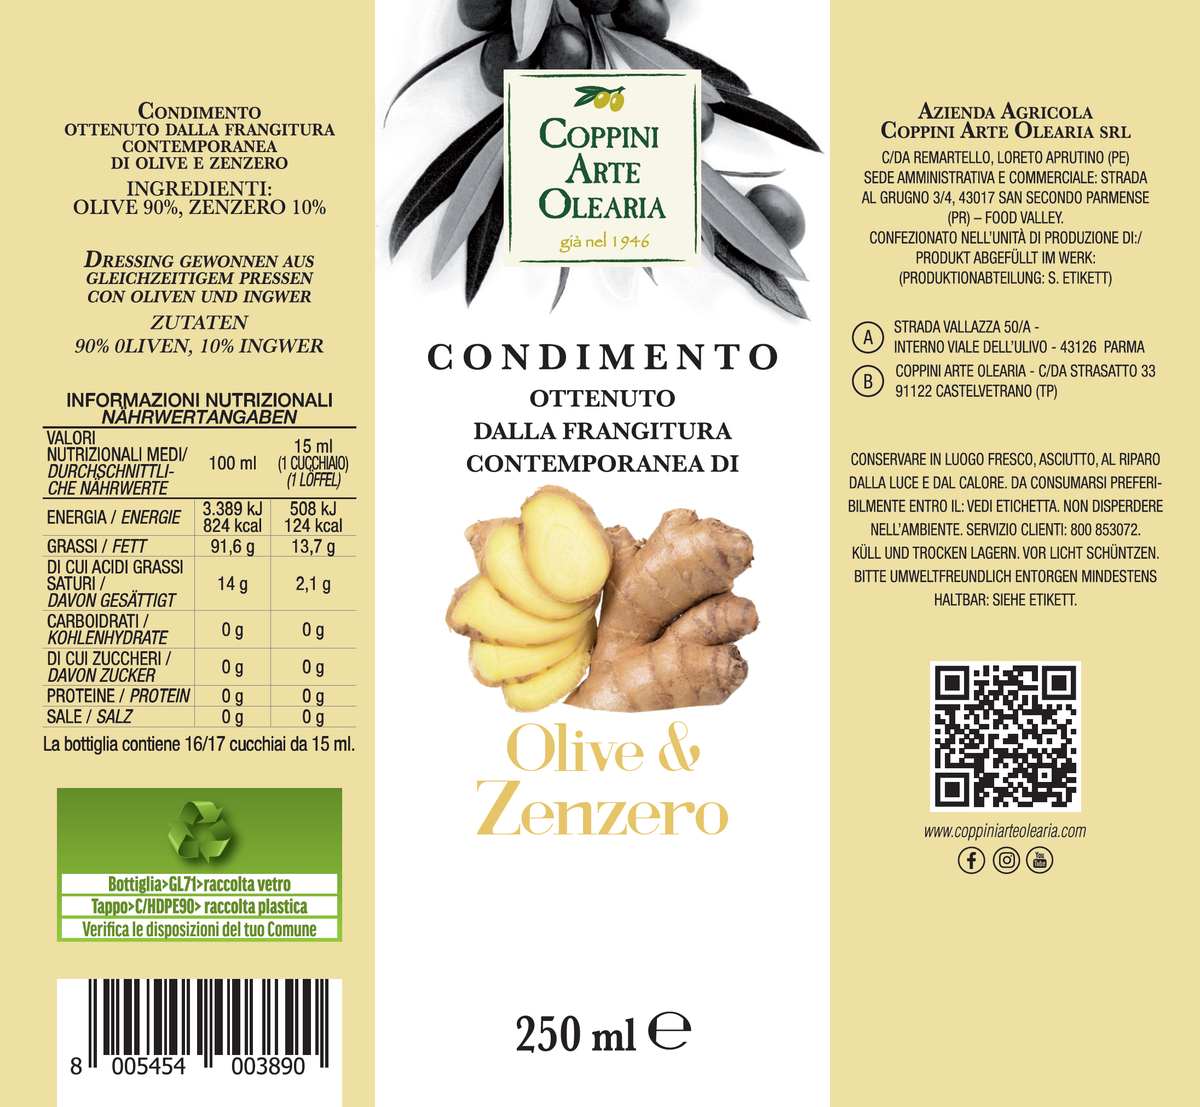 Etichetta condimento olive e zenzero Coppini Arte Olearia